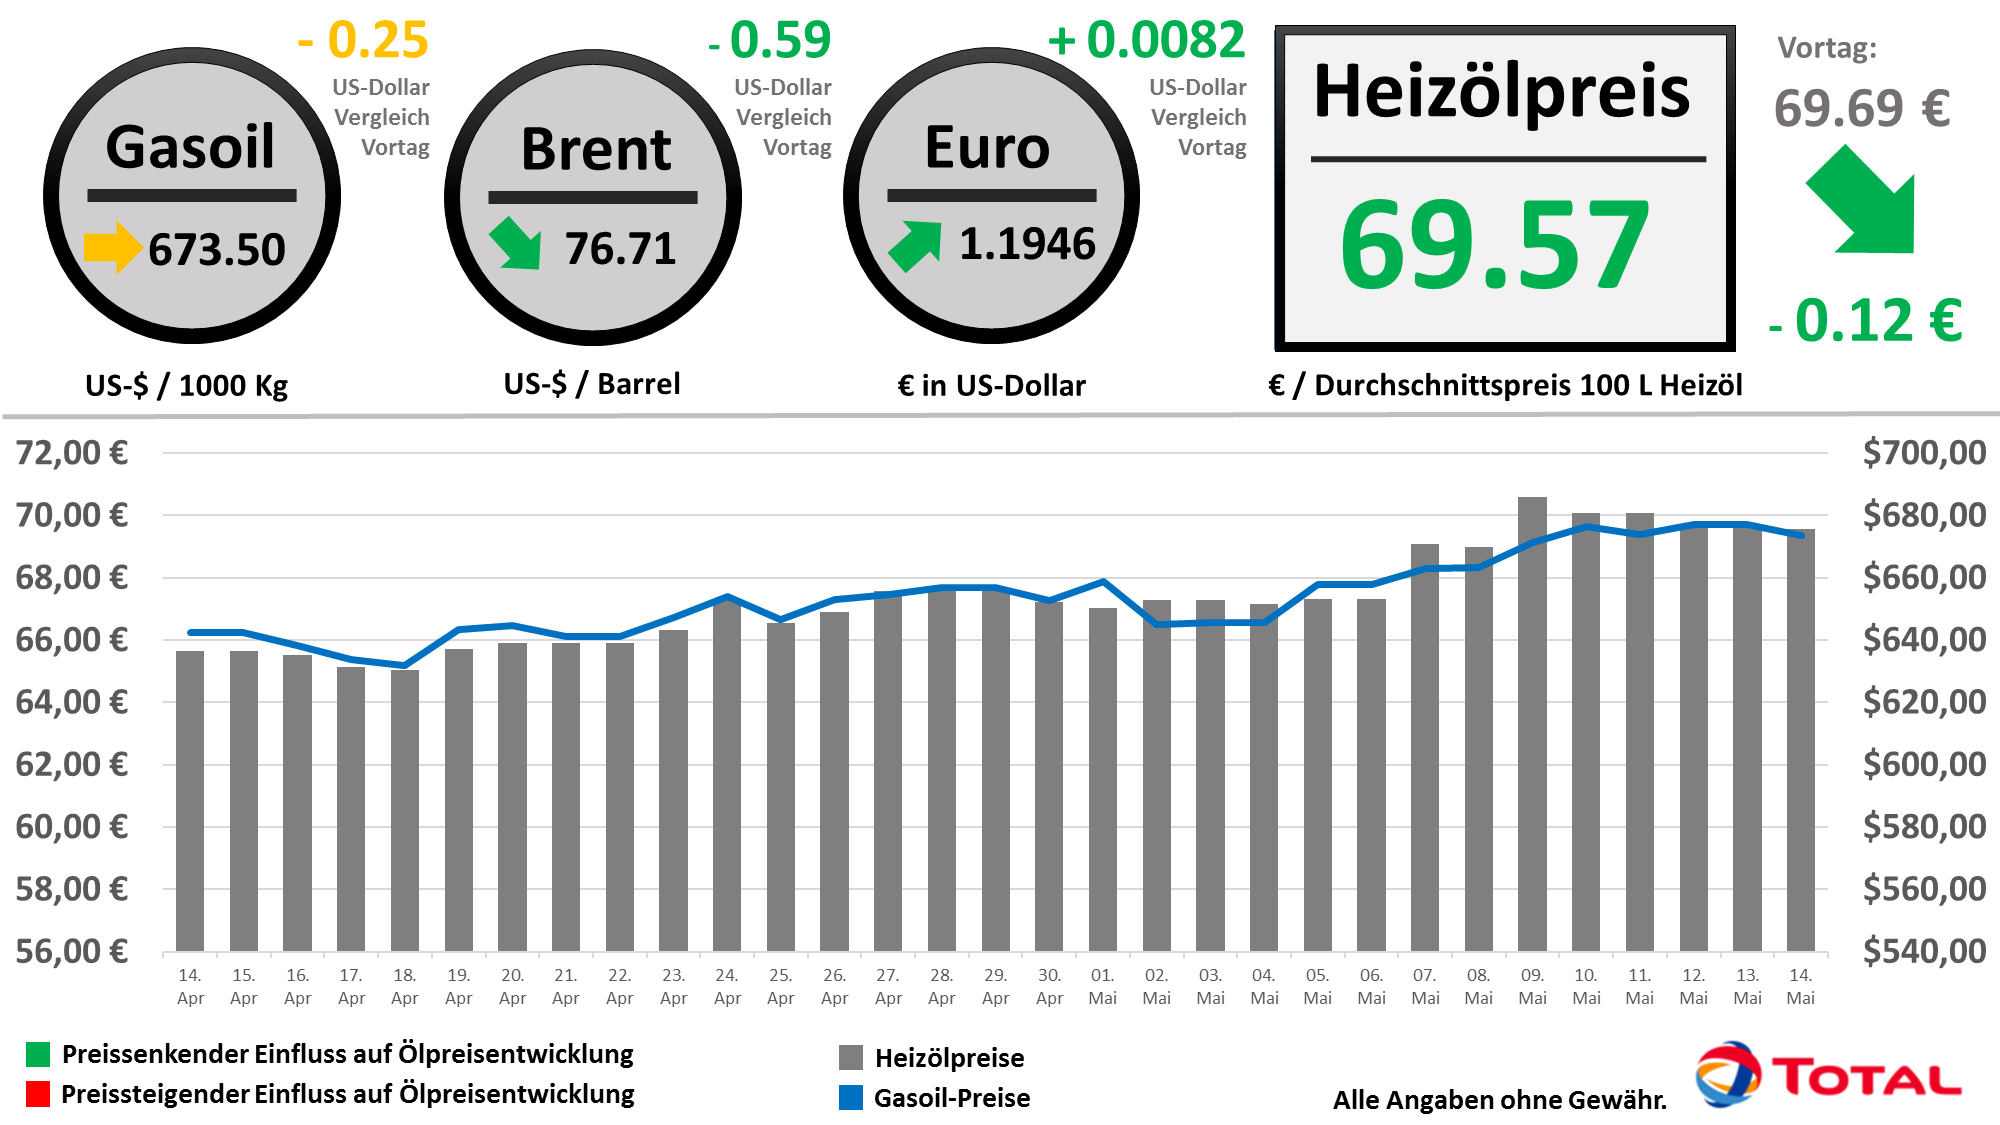 Heizölpreisentwicklung der letzten 30 Tage Stand: 11.05.2018